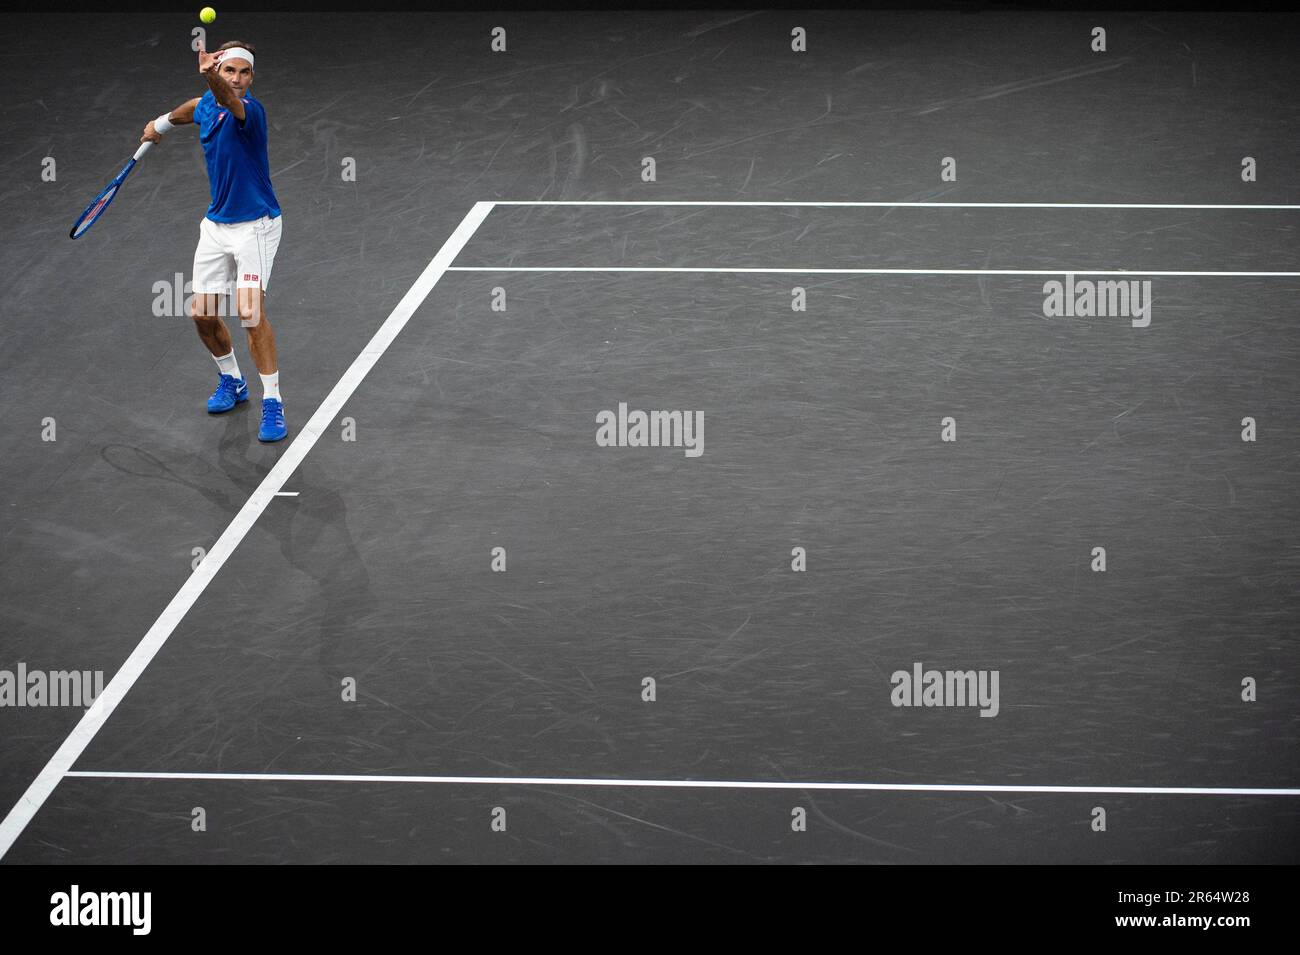 Svizzera, Ginevra : tennista professionista Roger Federer, Team Europe, alla Laver Cup 2019 Foto Stock